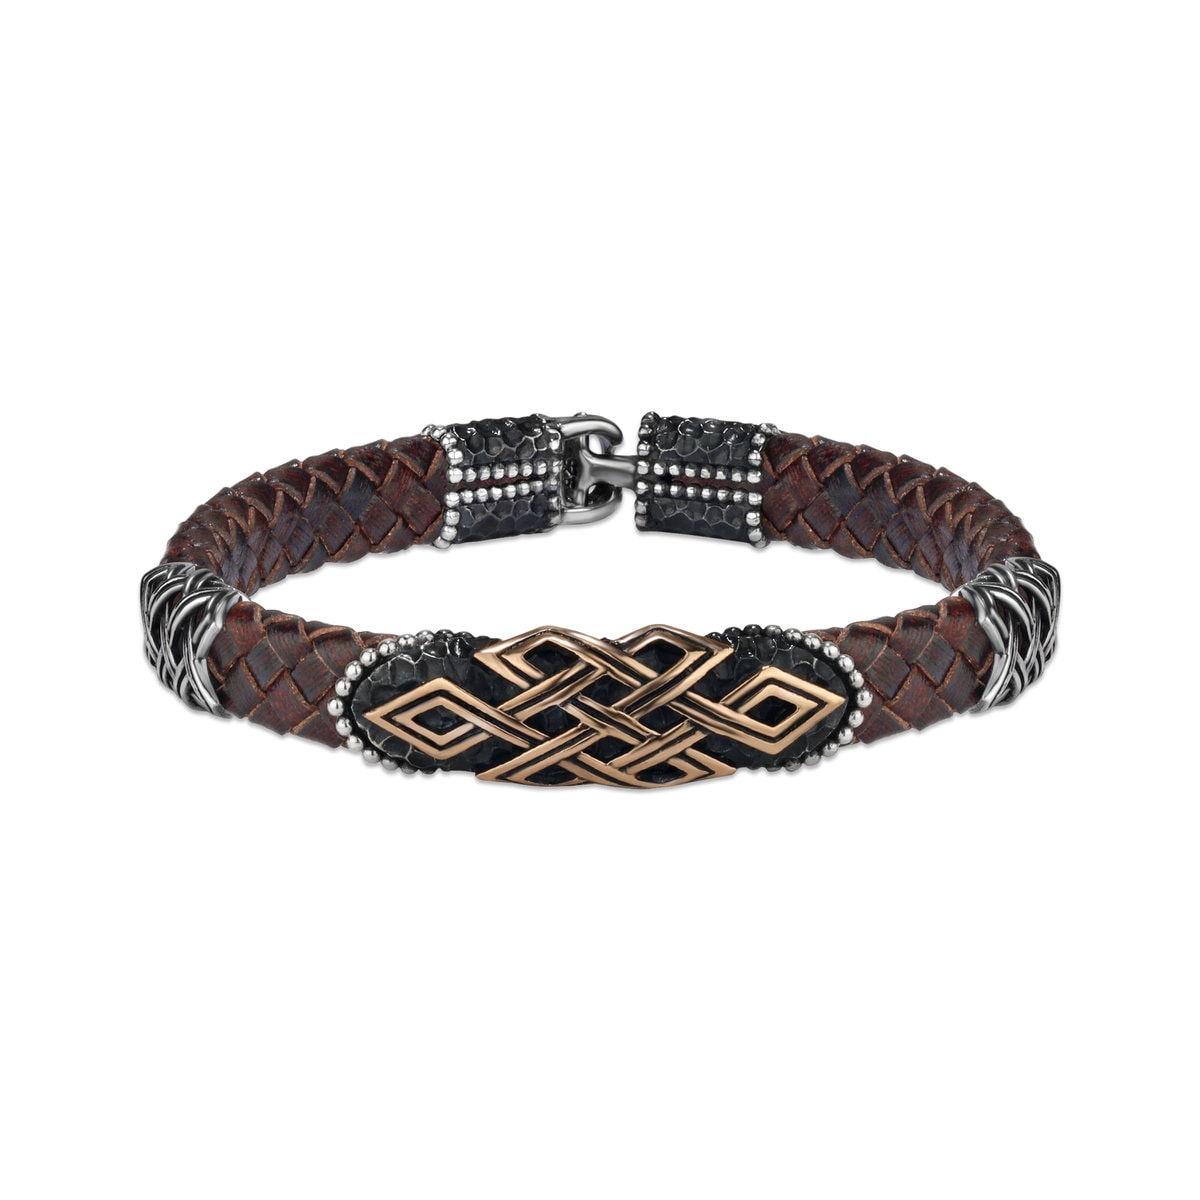 http://orlasilver.com/cdn/shop/products/leather-sterling-silver-mens-bracelet-EBLK016.jpg?v=1666211100